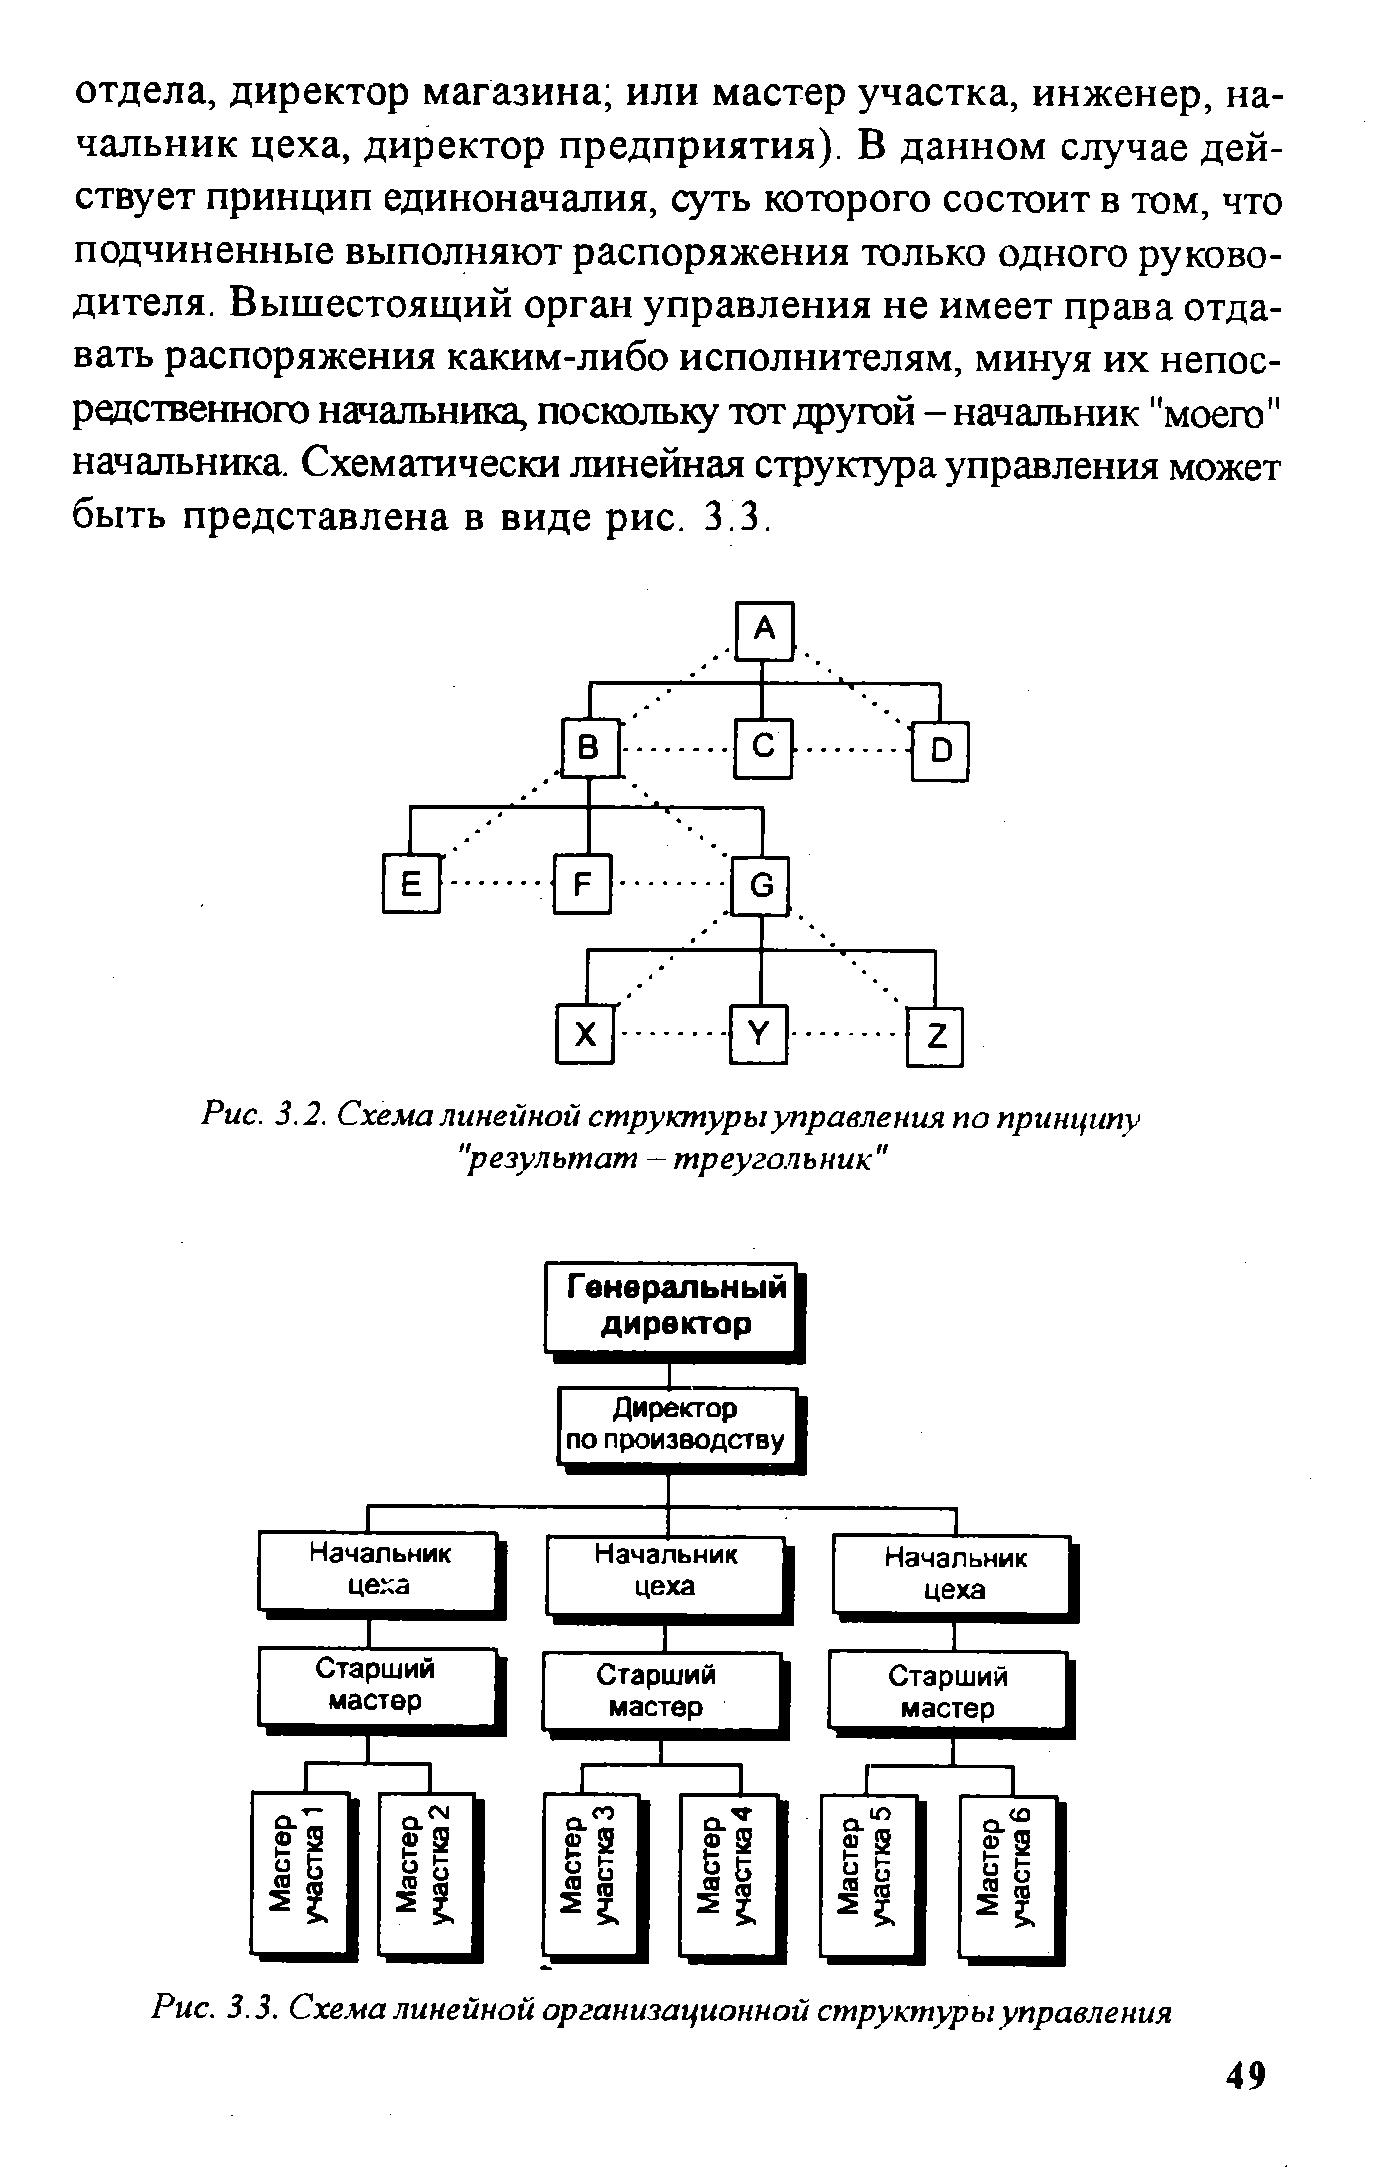 Рис. 3.2. Схема линейной структуры управления по принципу "результат — треугольник"
